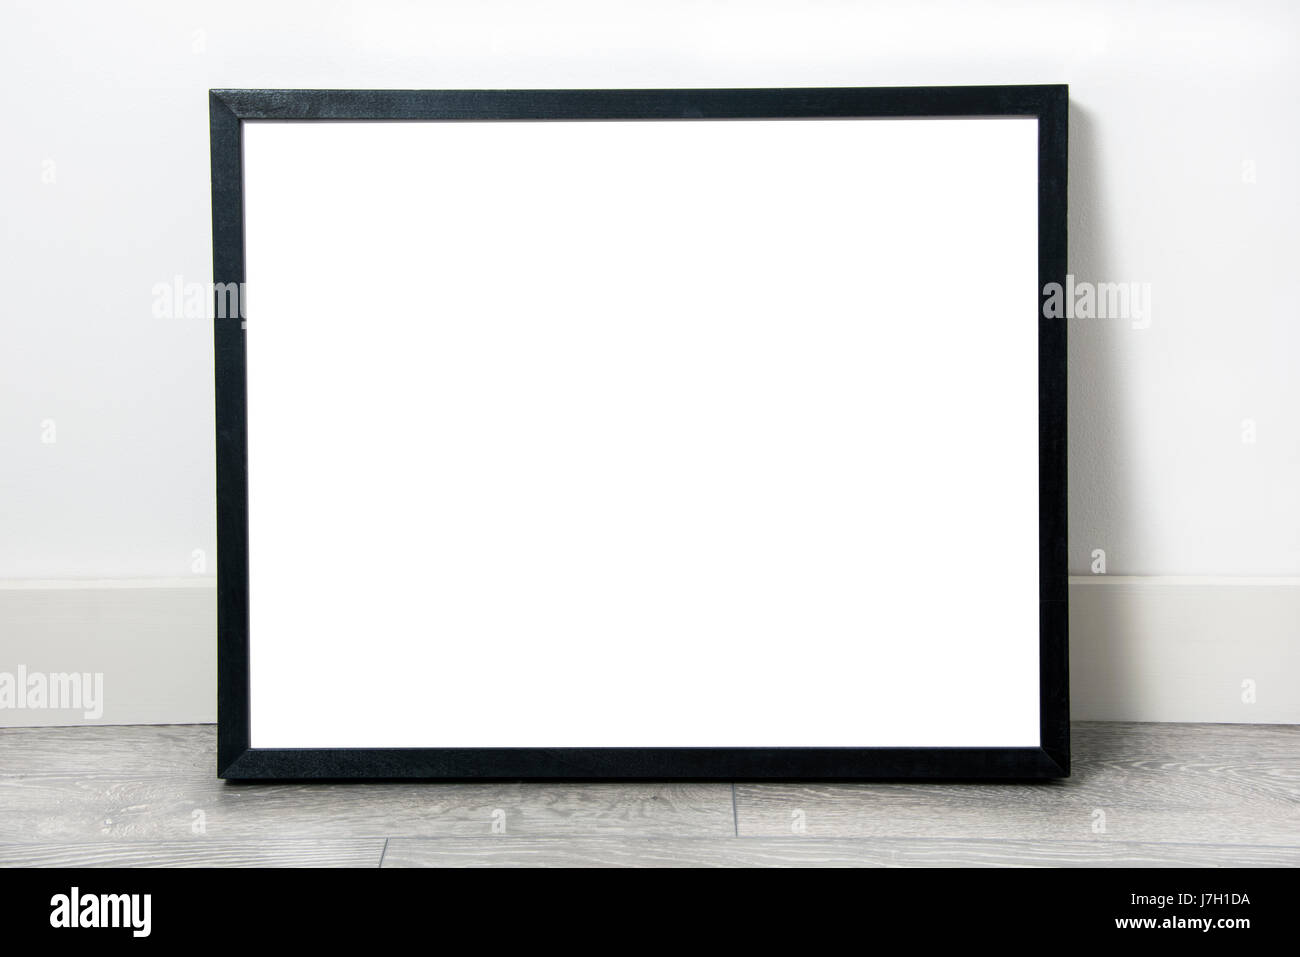 Black rectangular frame, blank inside, leaning against wall on grey oak flooring Stock Photo